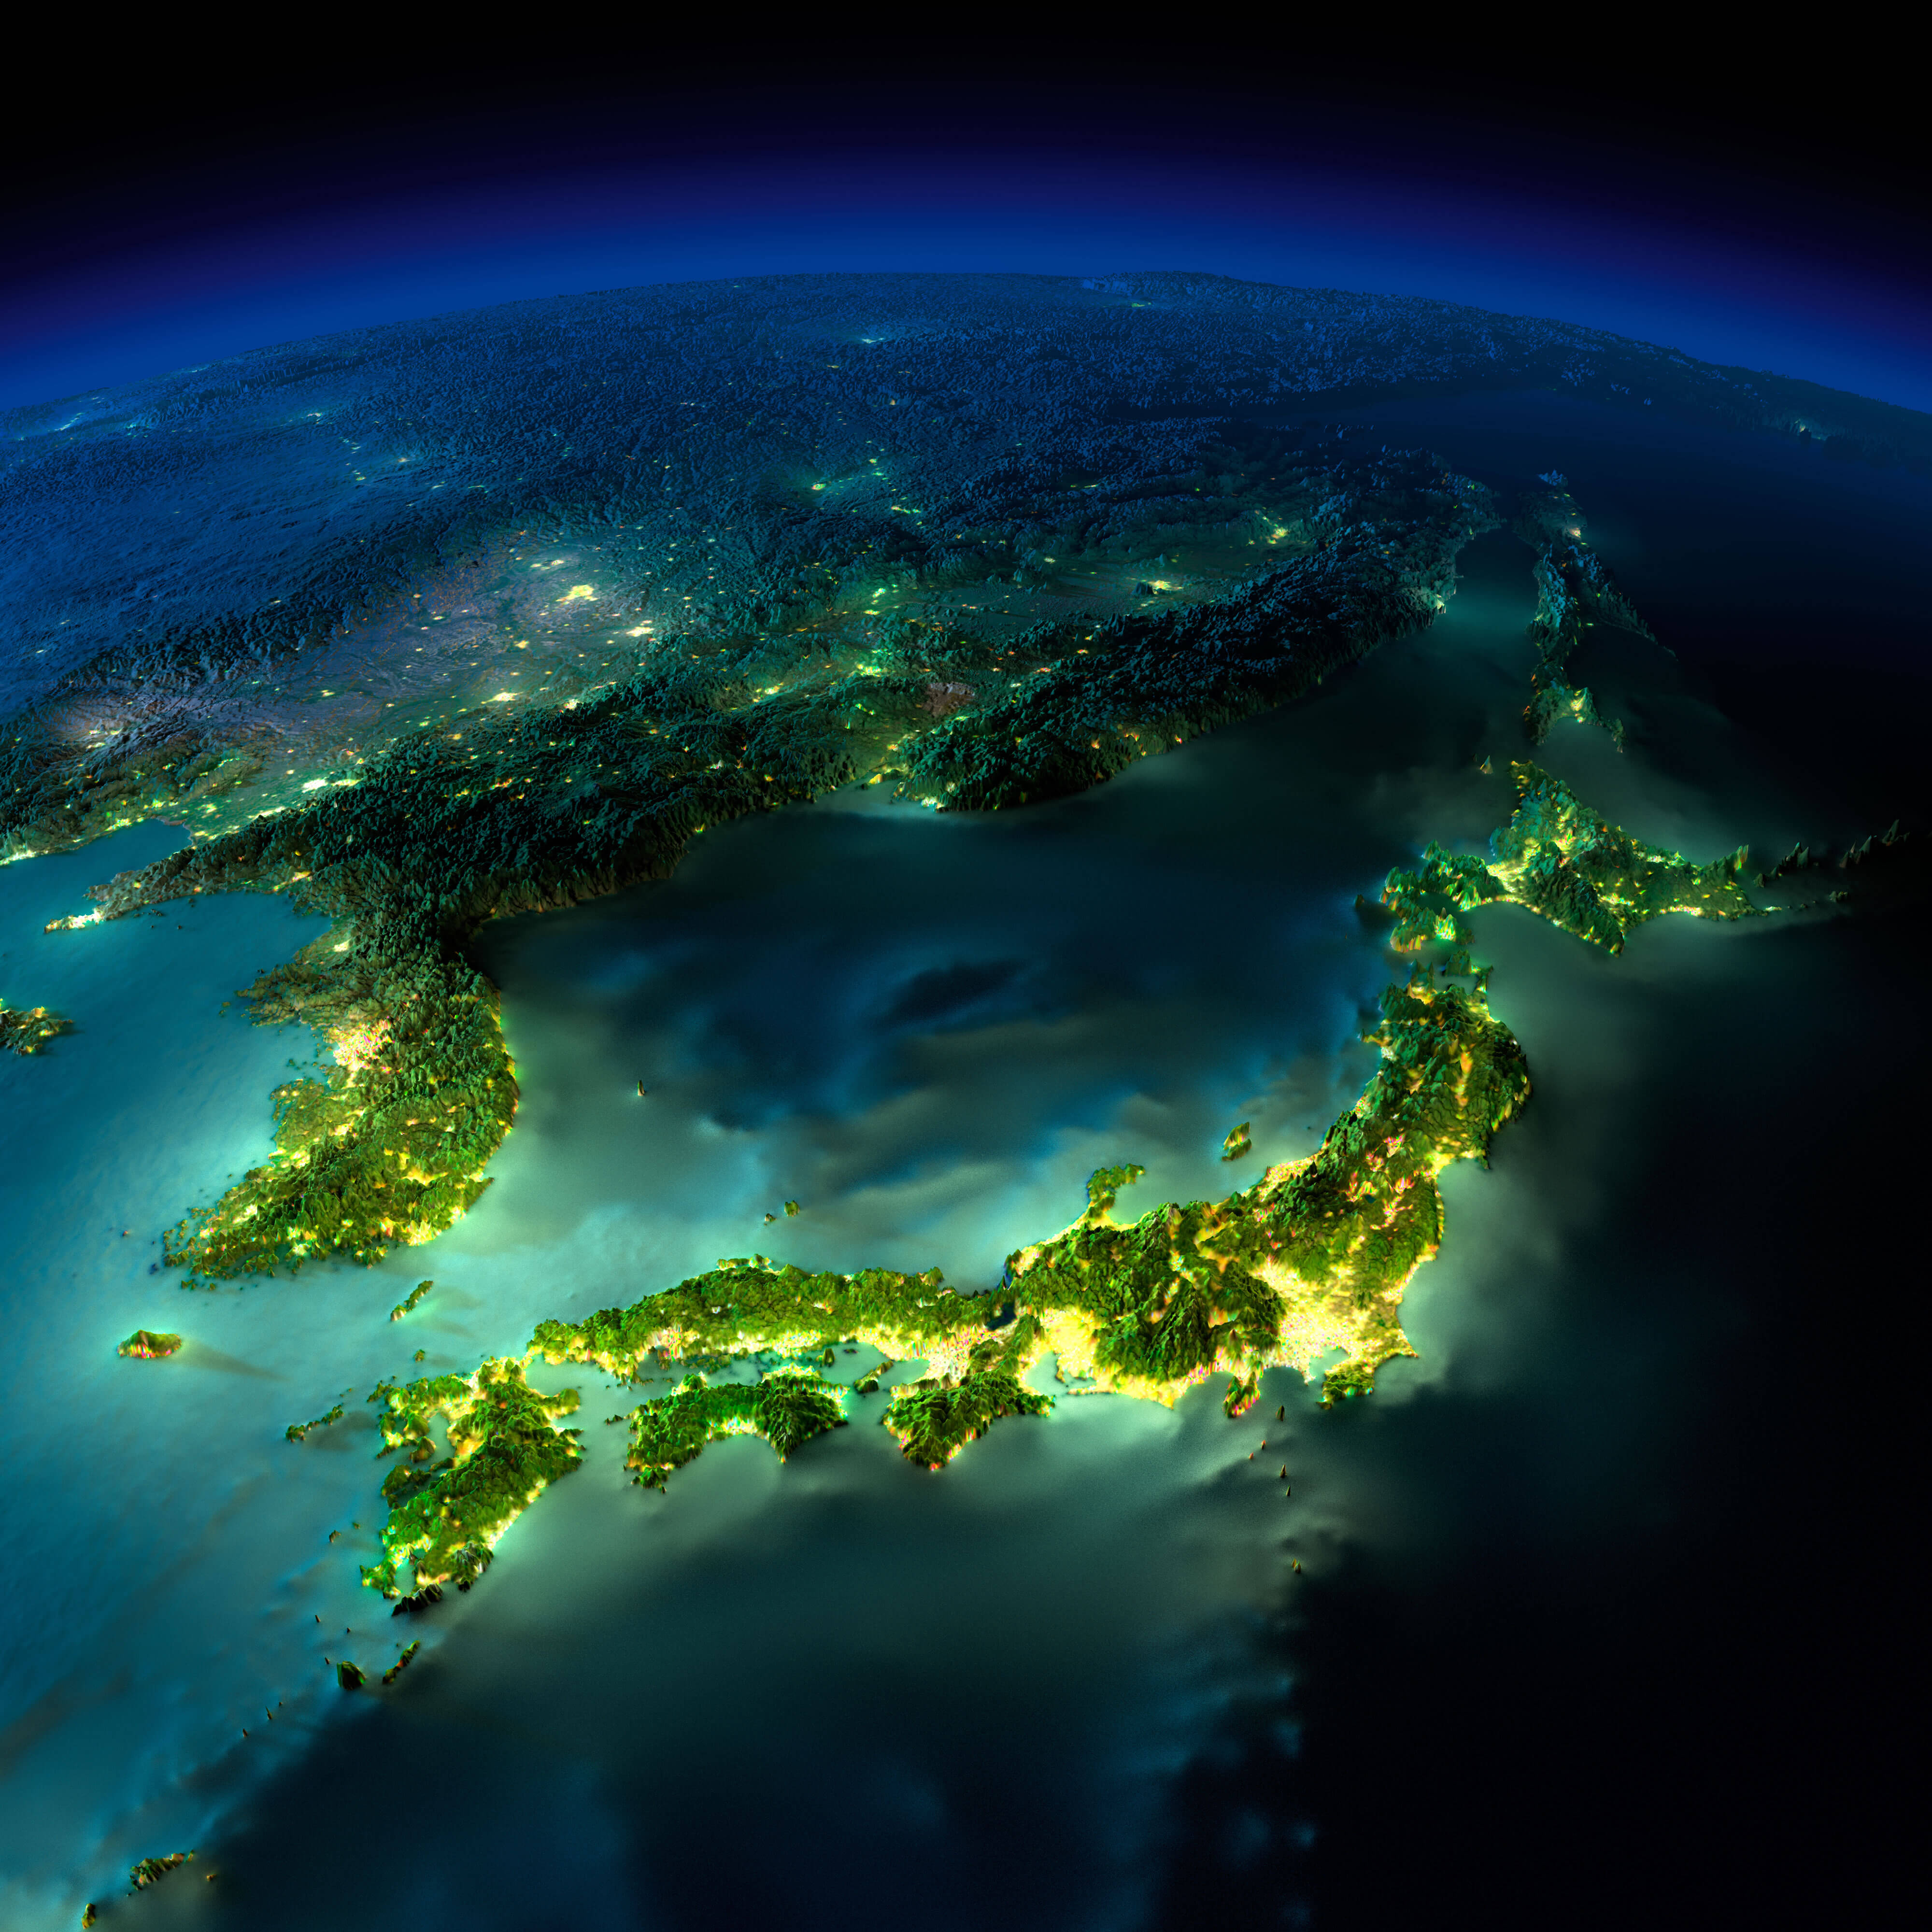 Japan Satellite Map